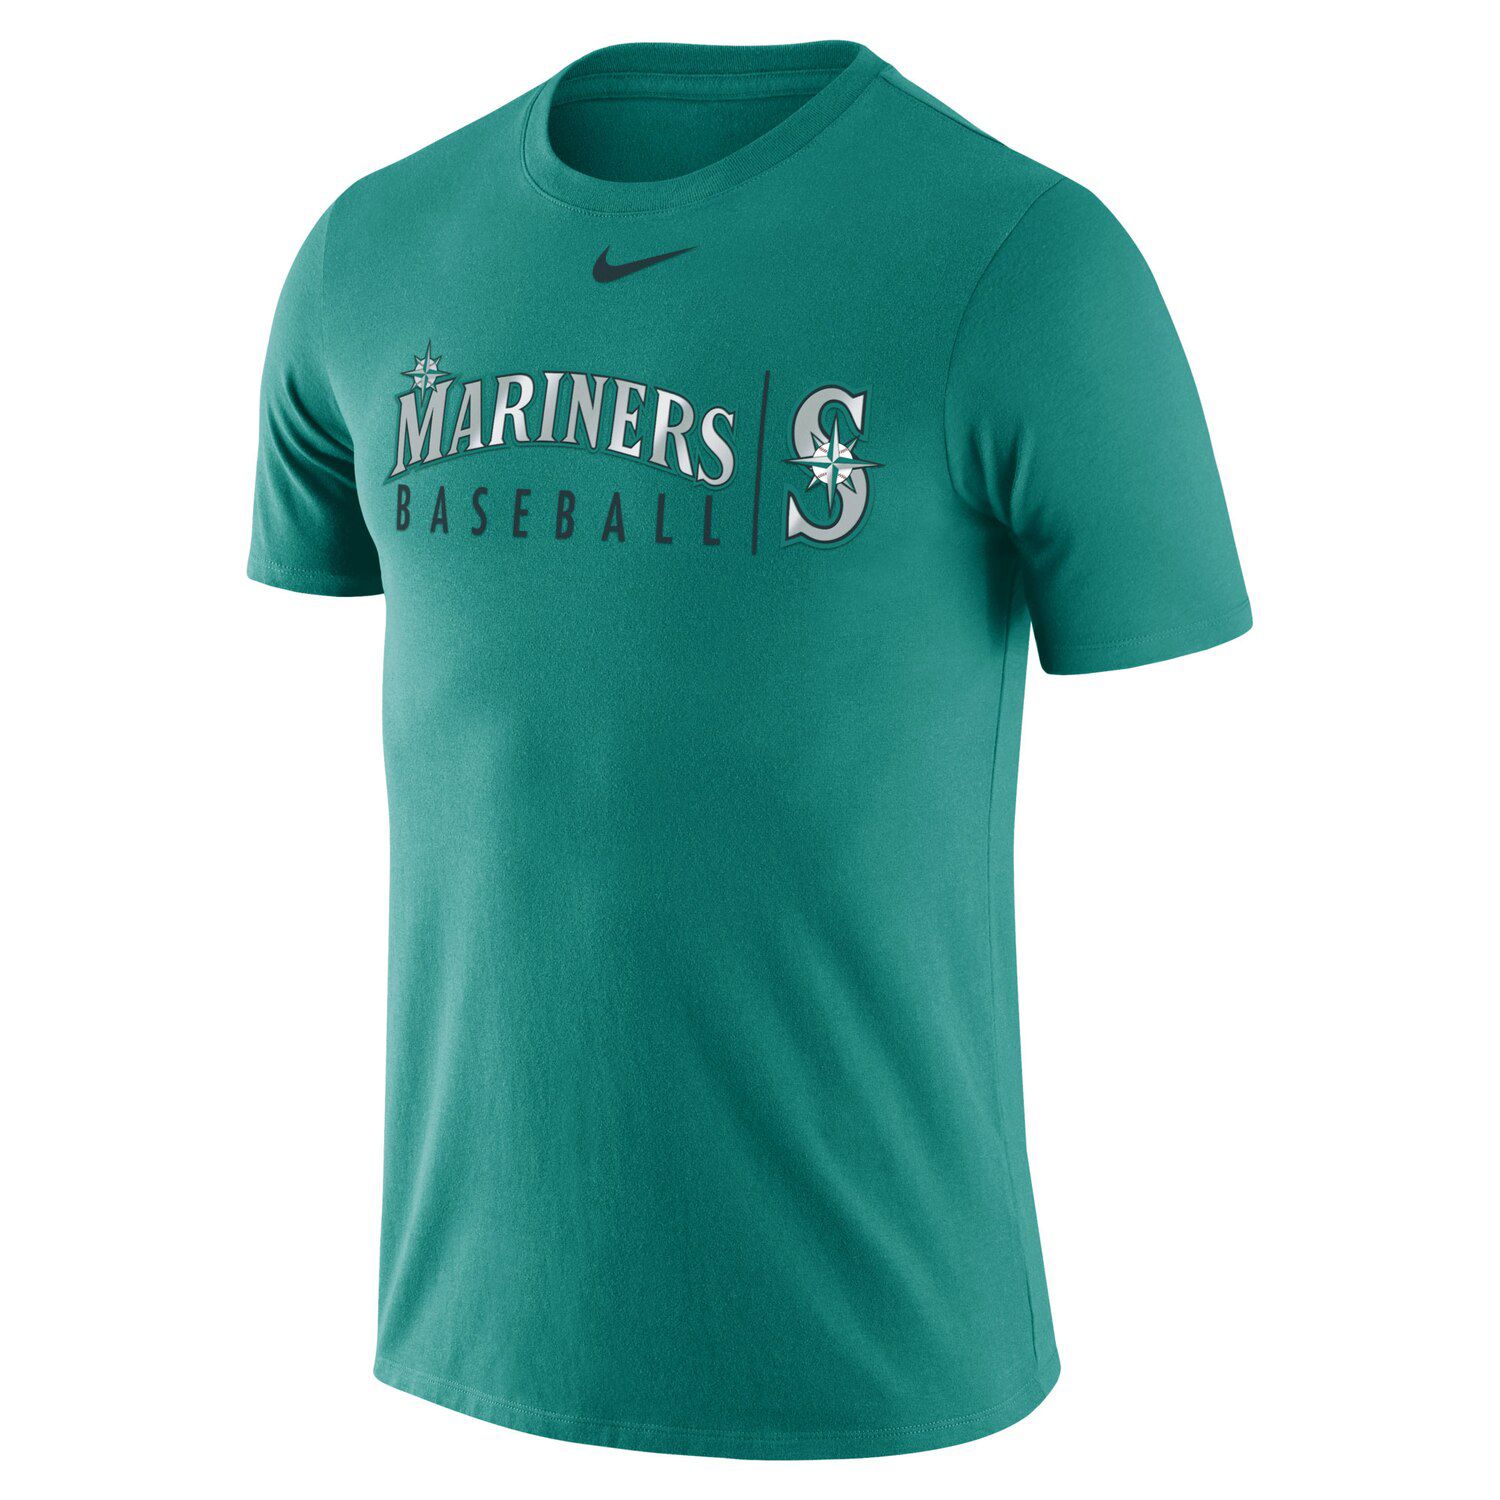 seattle mariners shirts cheap